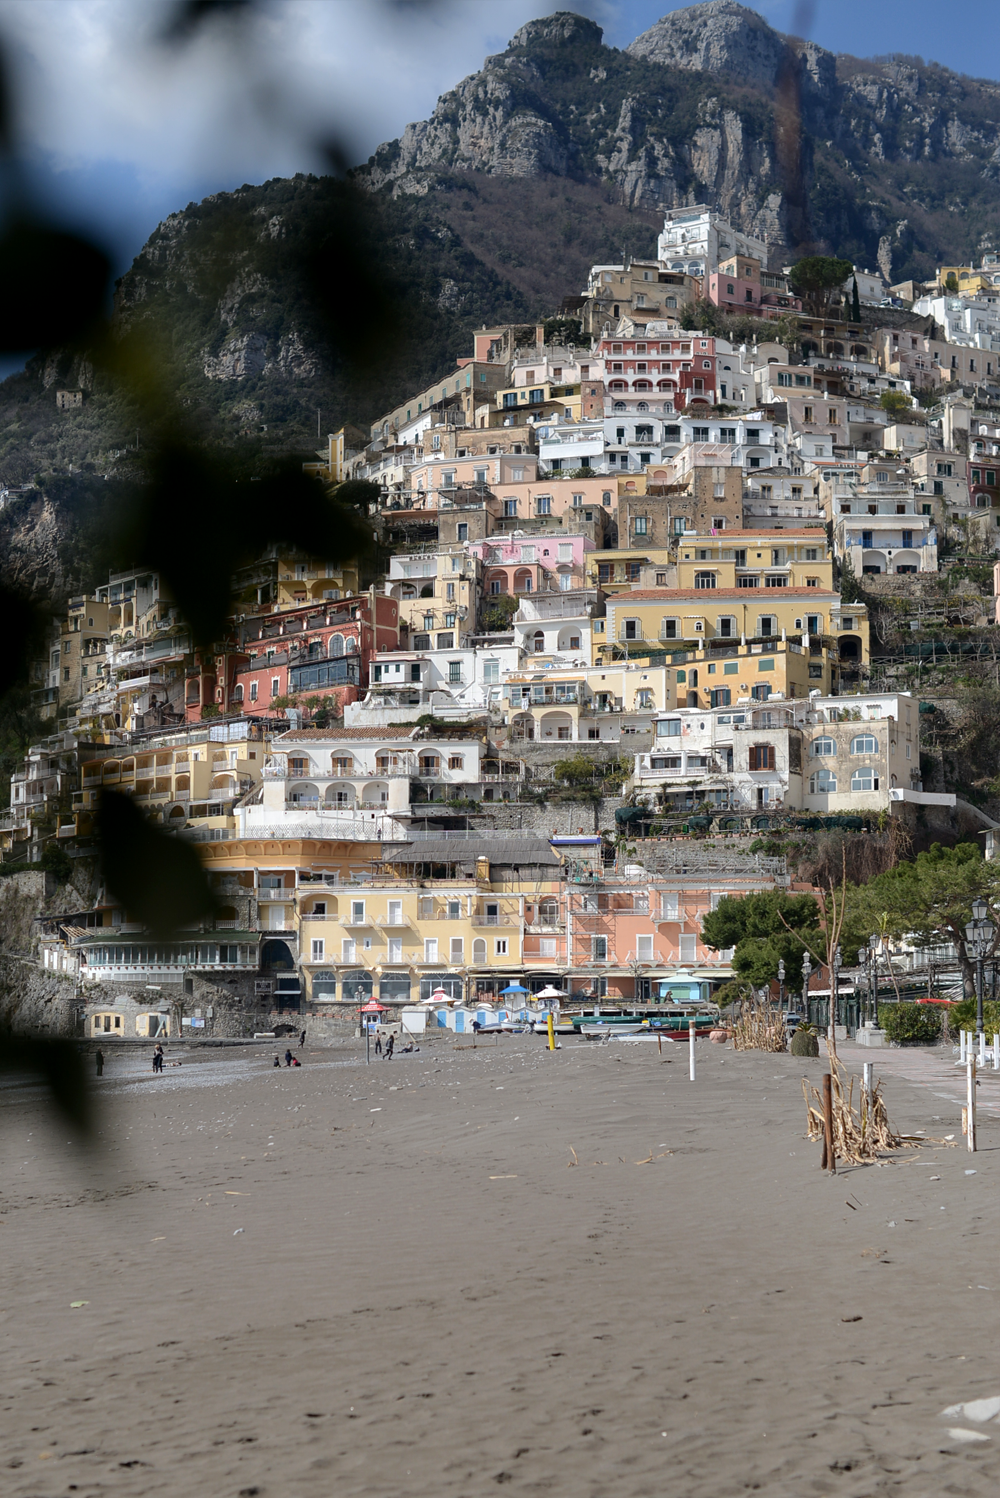 Amalfi Coast, Italy / FOREVERVANNY.com